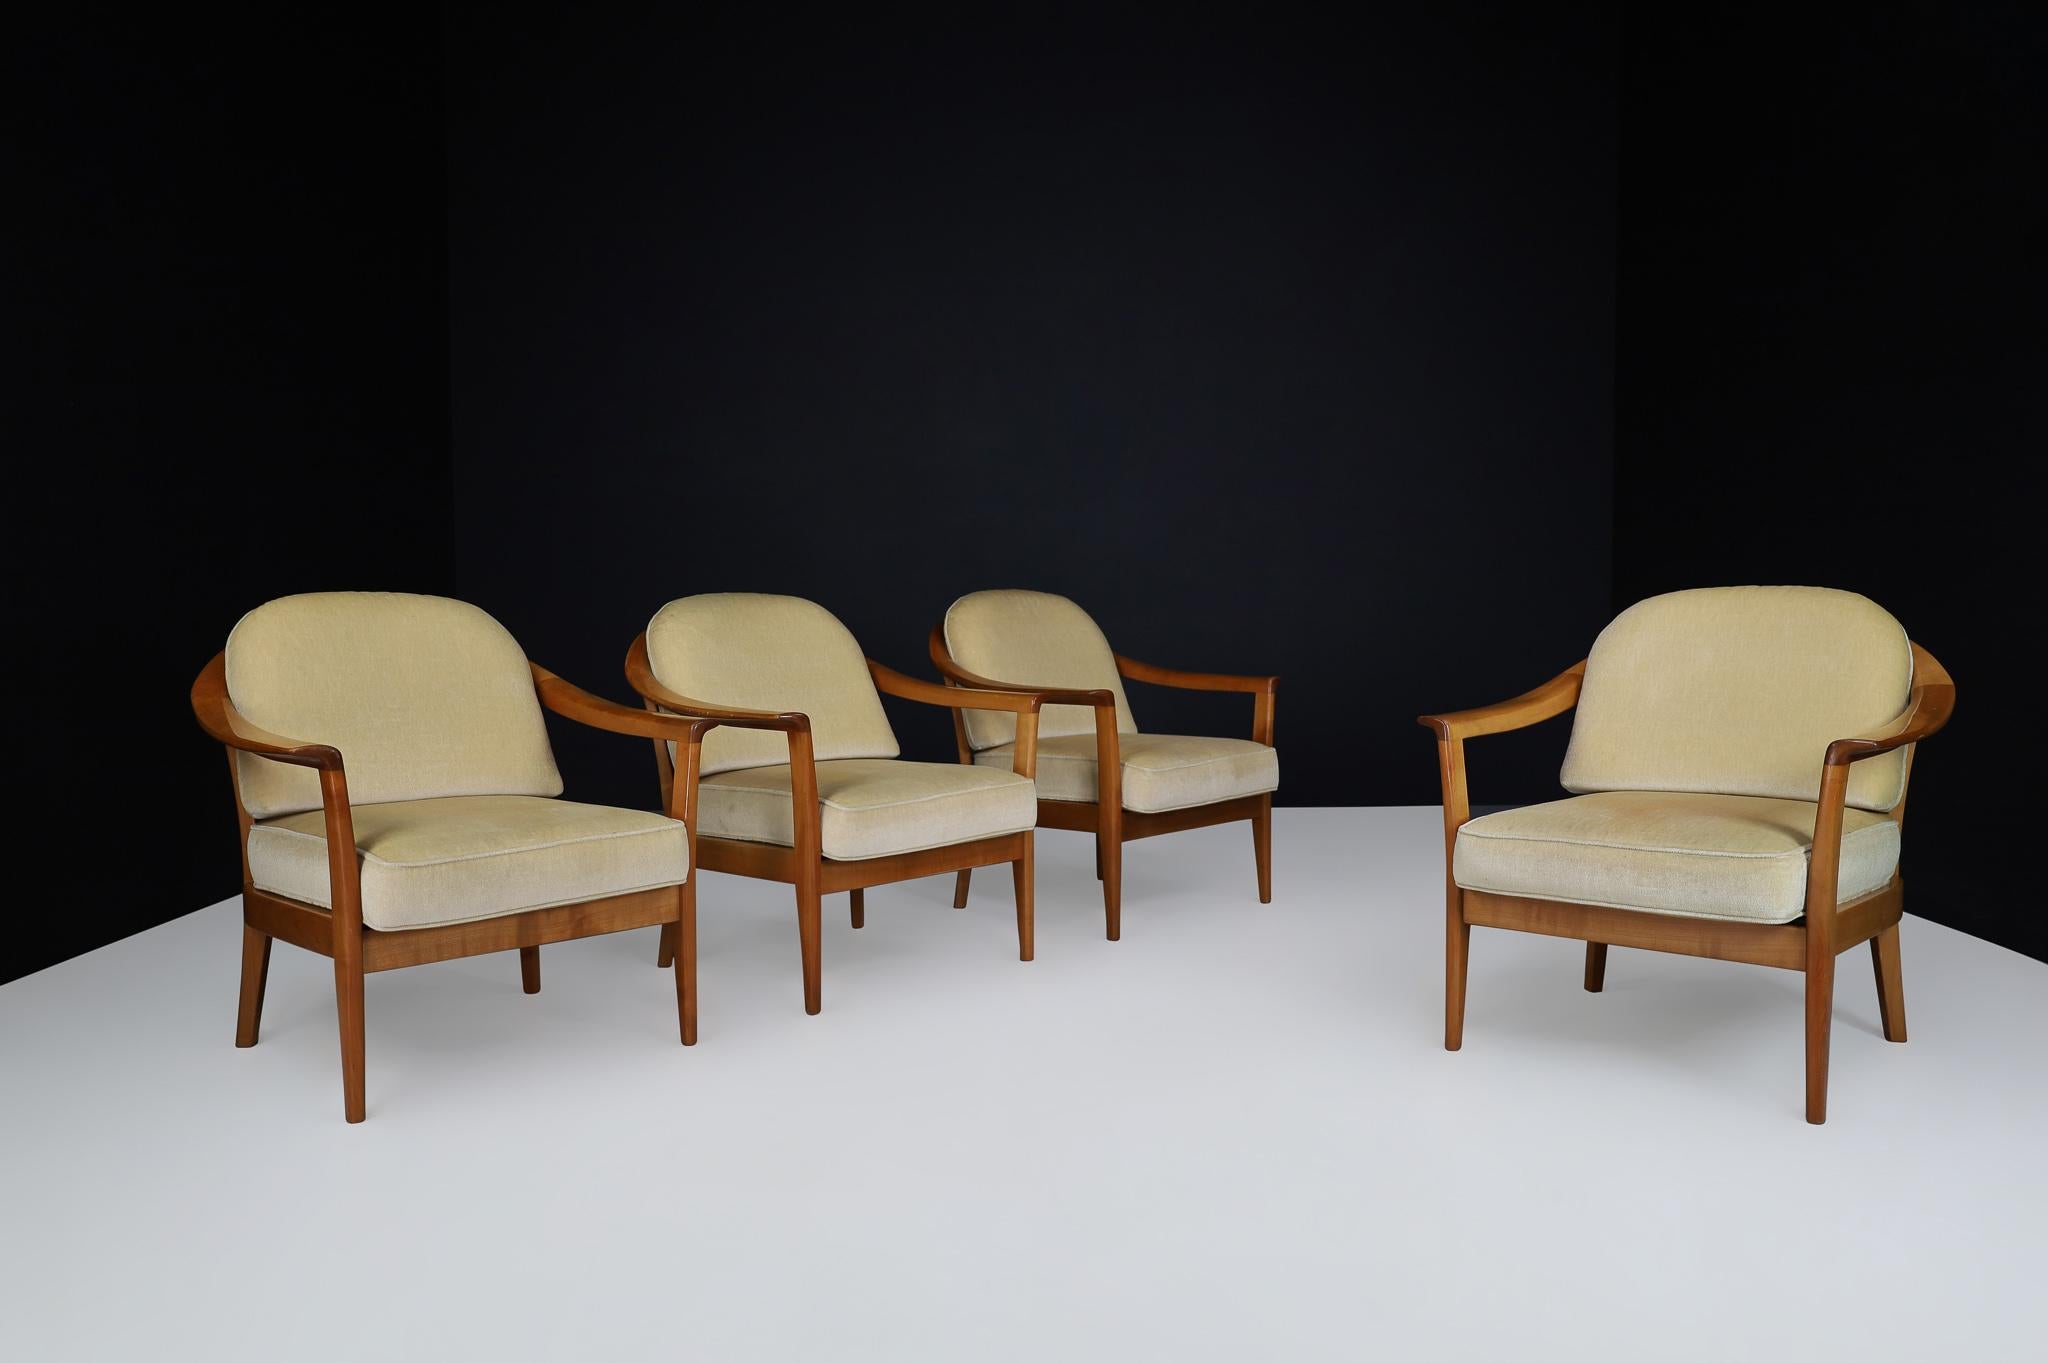 Mid Century Modern Easy Chairs in Kirsche von Wilhelm Knoll, Deutschland 1960er Jahre Mitte des 20.

Ein wunderbares Set aus vier Sesseln aus den 1960er Jahren. Hochwertiger, massiver Rahmen aus braun gebeiztem Kirschbaumholz. Der Originalstoff ist